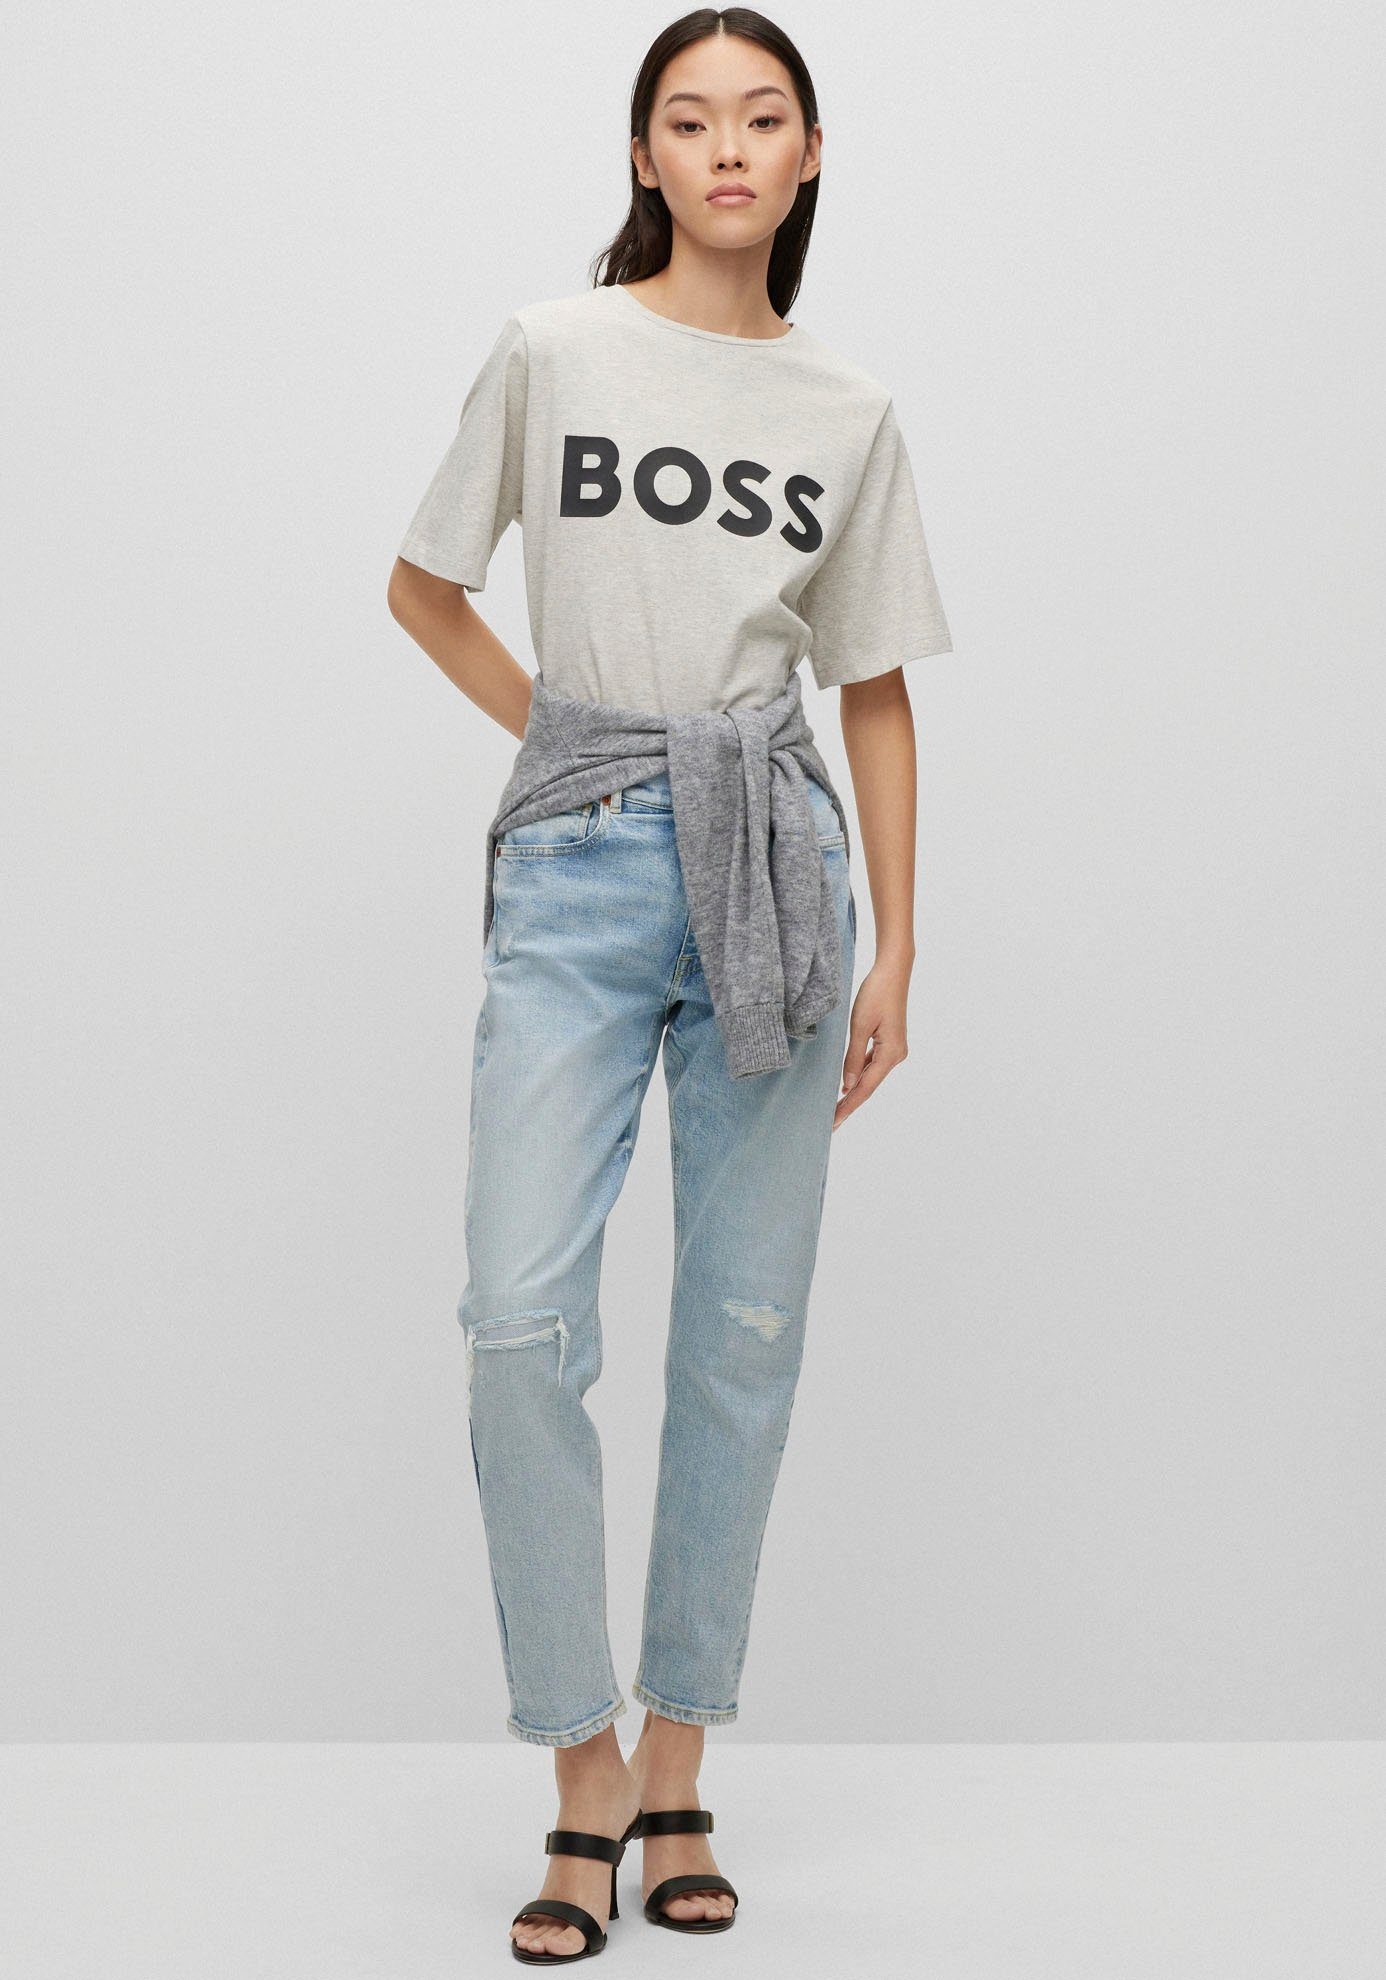 ORANGE BOSS-Kontrastband Open Grey mit Ausschnitt am innen BOSS T-Shirt